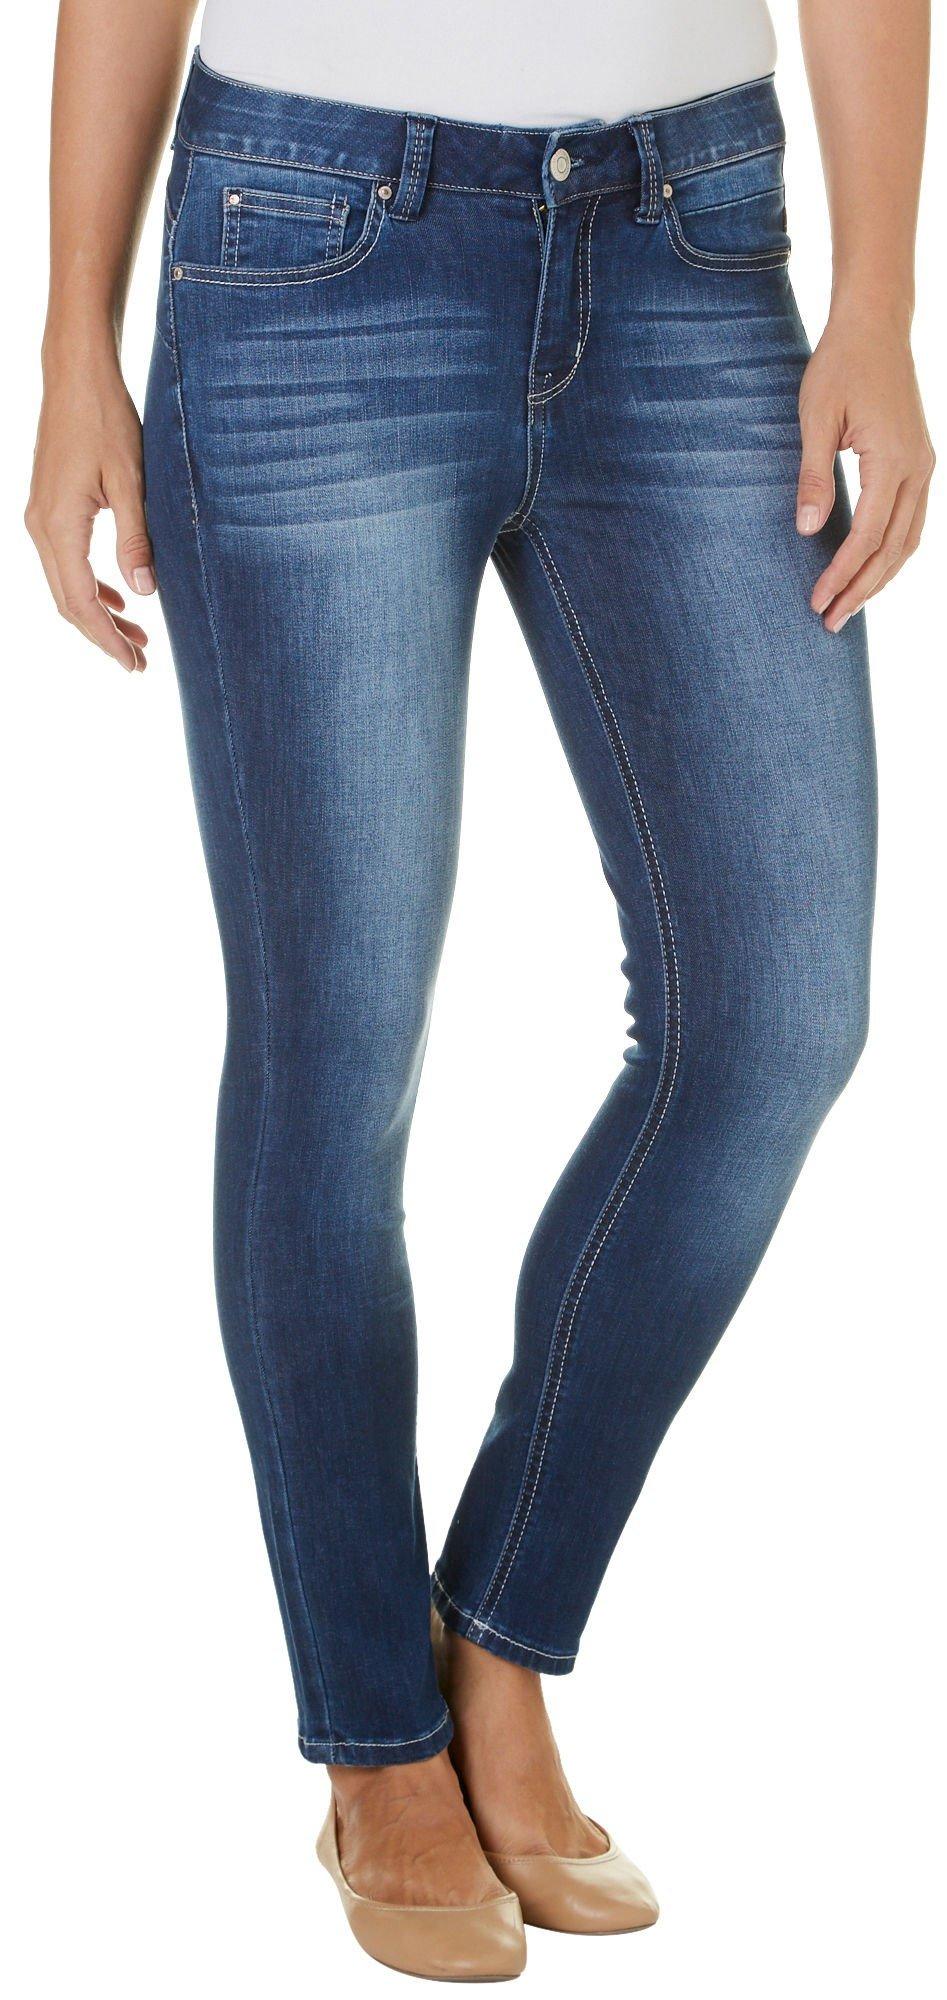 Women's Jeans | Shop Jeans for Women | Bealls Florida